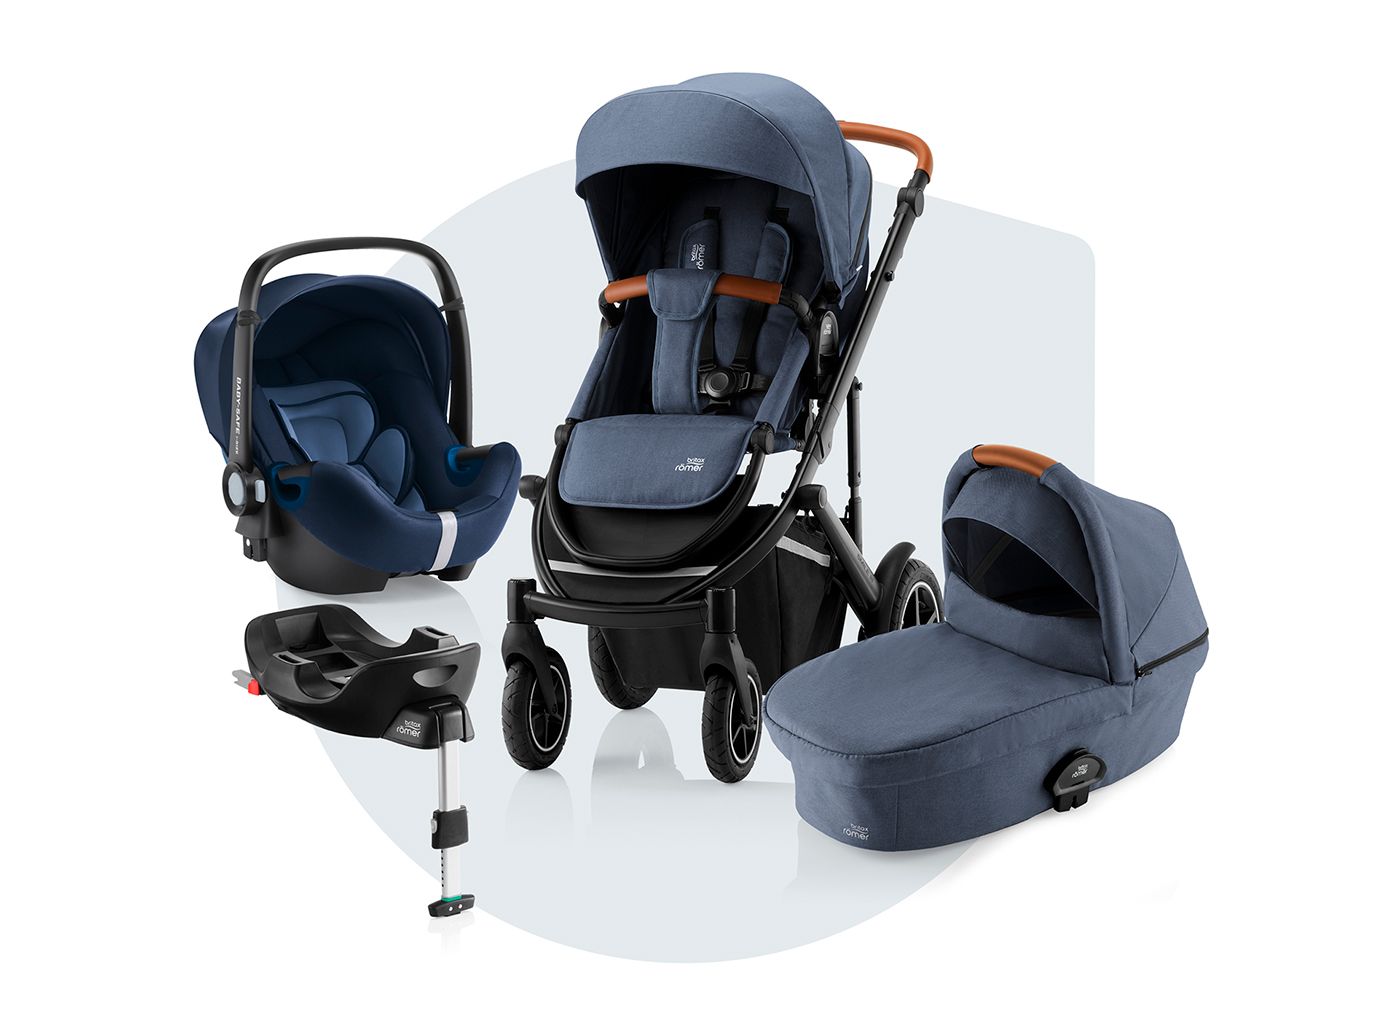 Qué silla de coche es adecuada para un recién nacido?